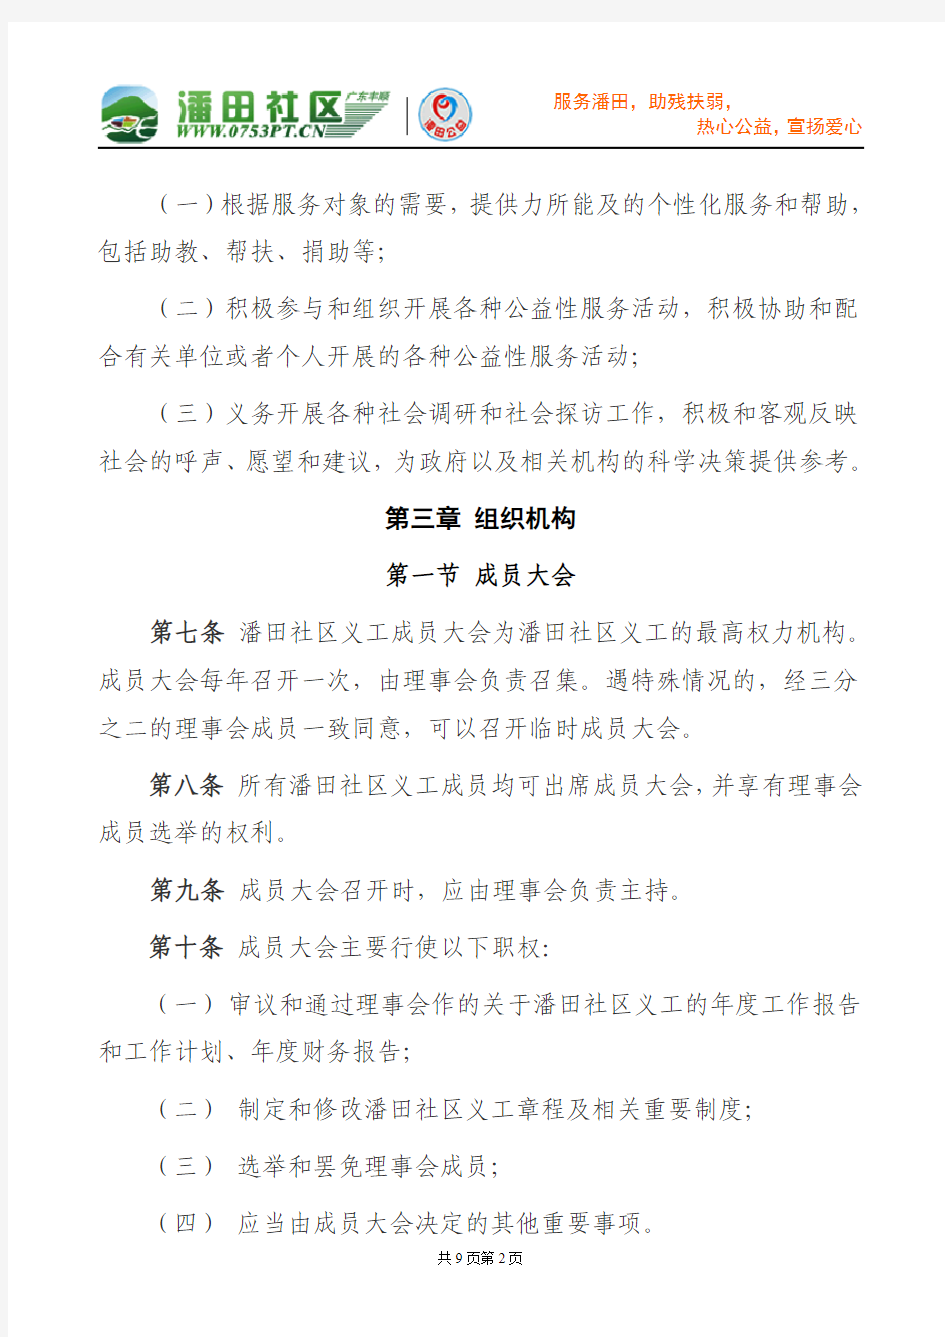 潘田社区义工章程(2010-10-26修订稿)